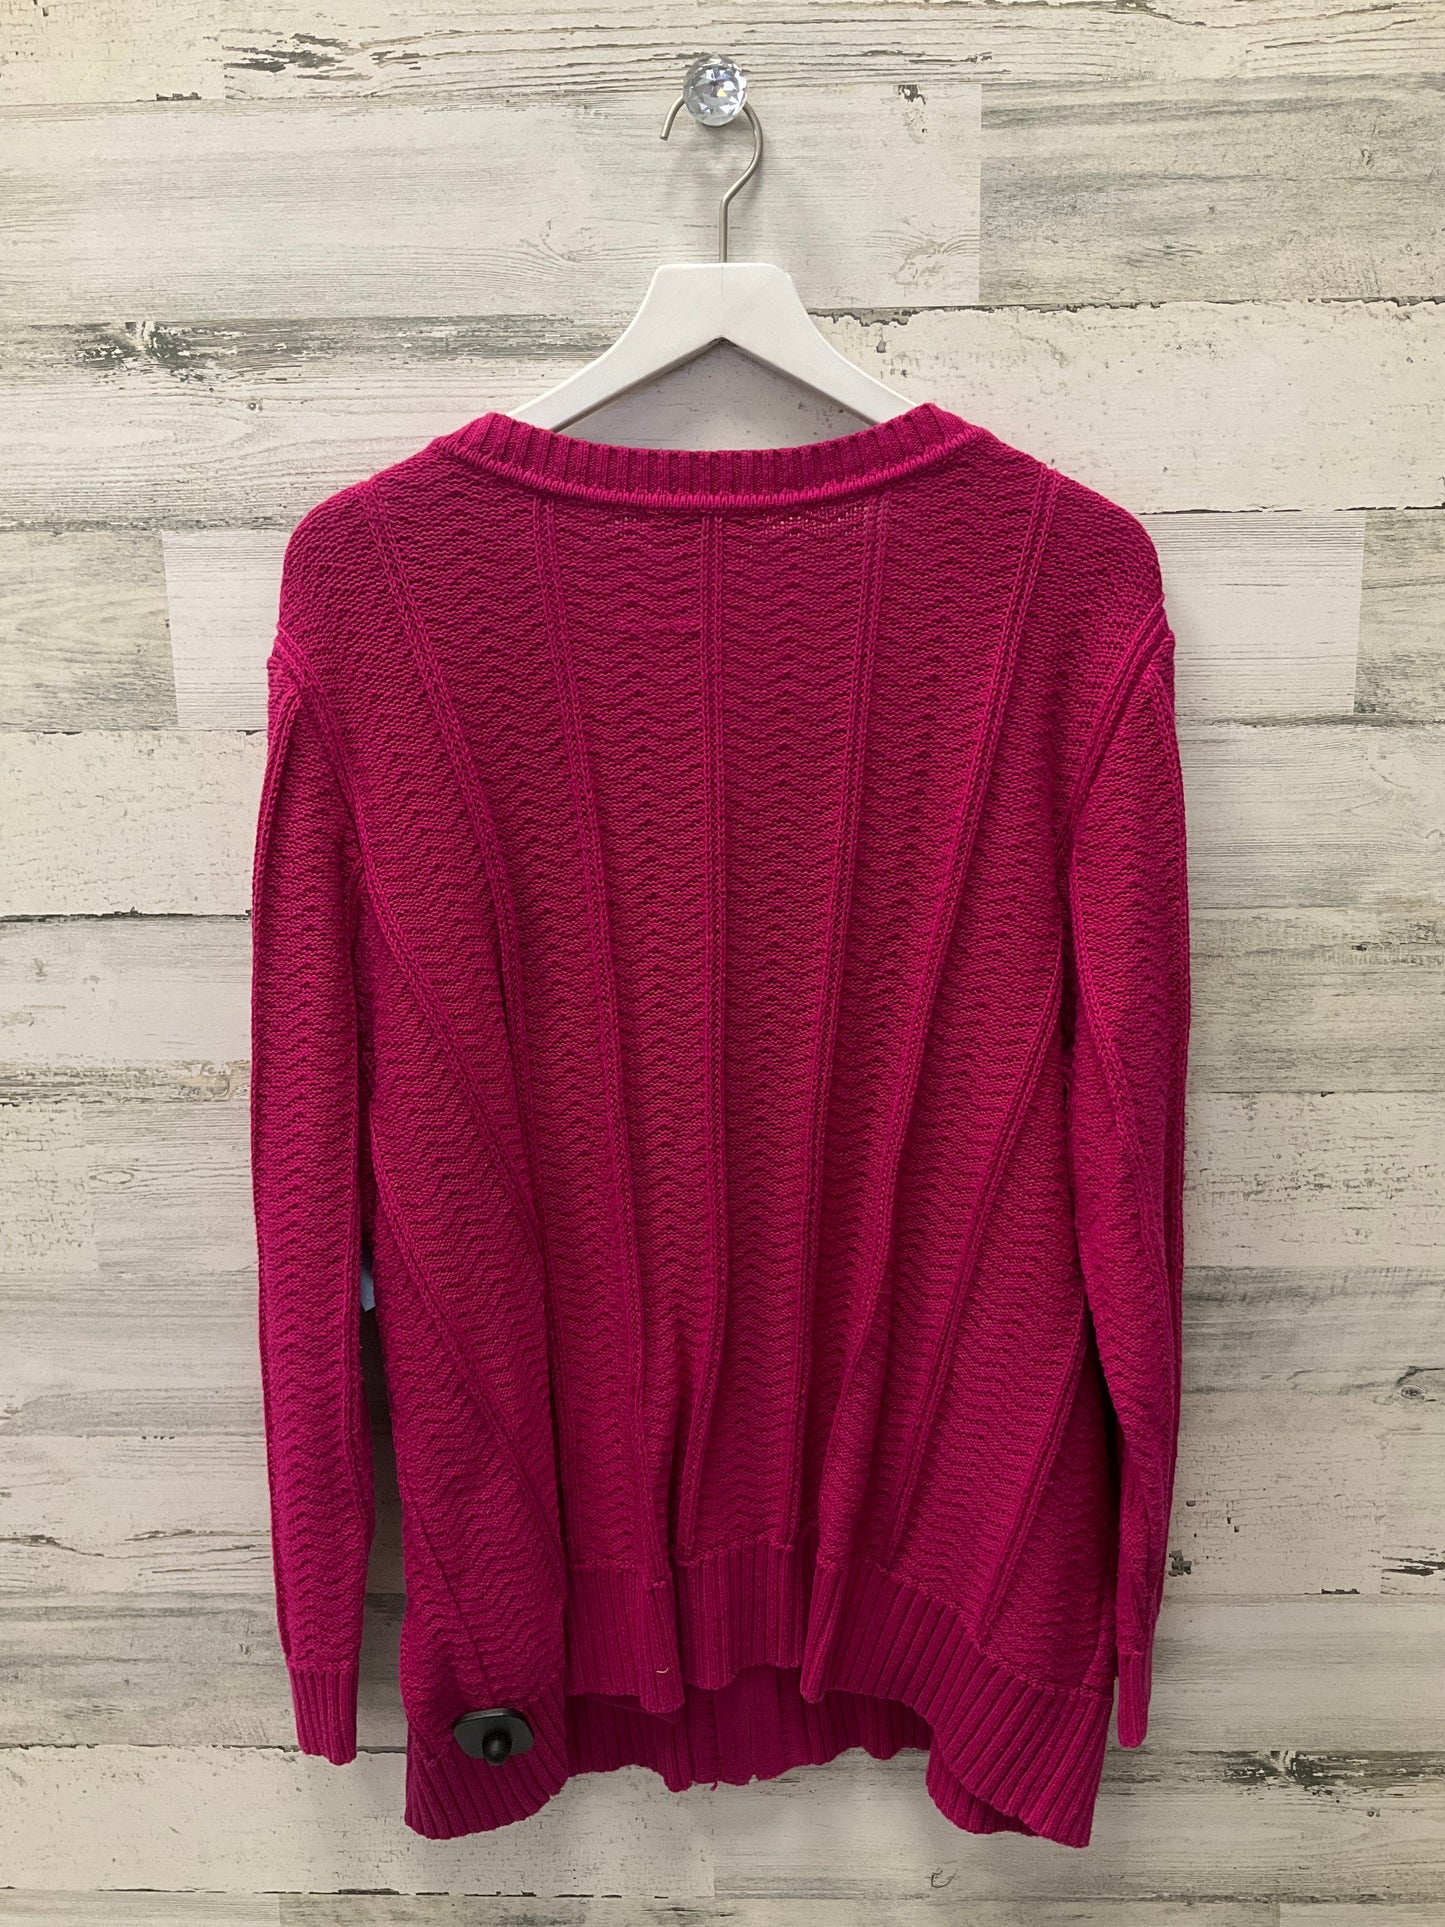 Sweater Cardigan By Cj Banks  Size: 3x